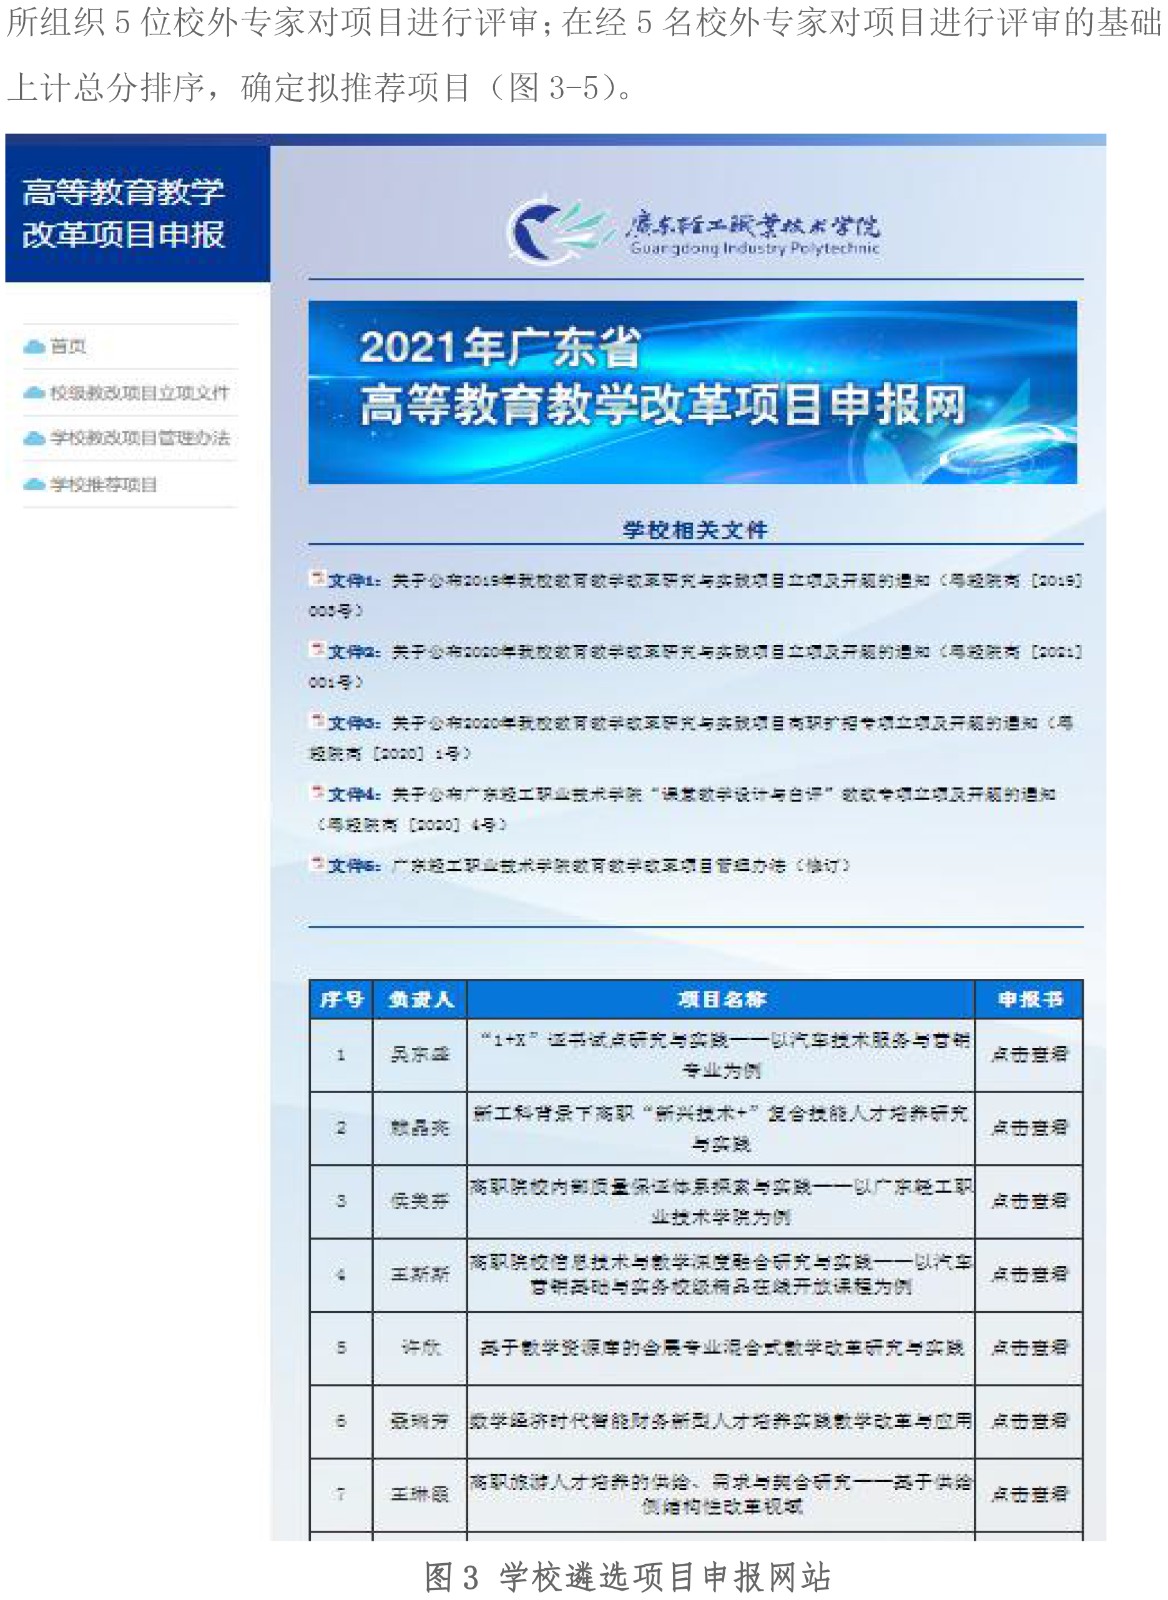 附件1：广东轻工职业技术学院关于2021年省质量工程项目的推荐遴选工作总结报告-3.jpg